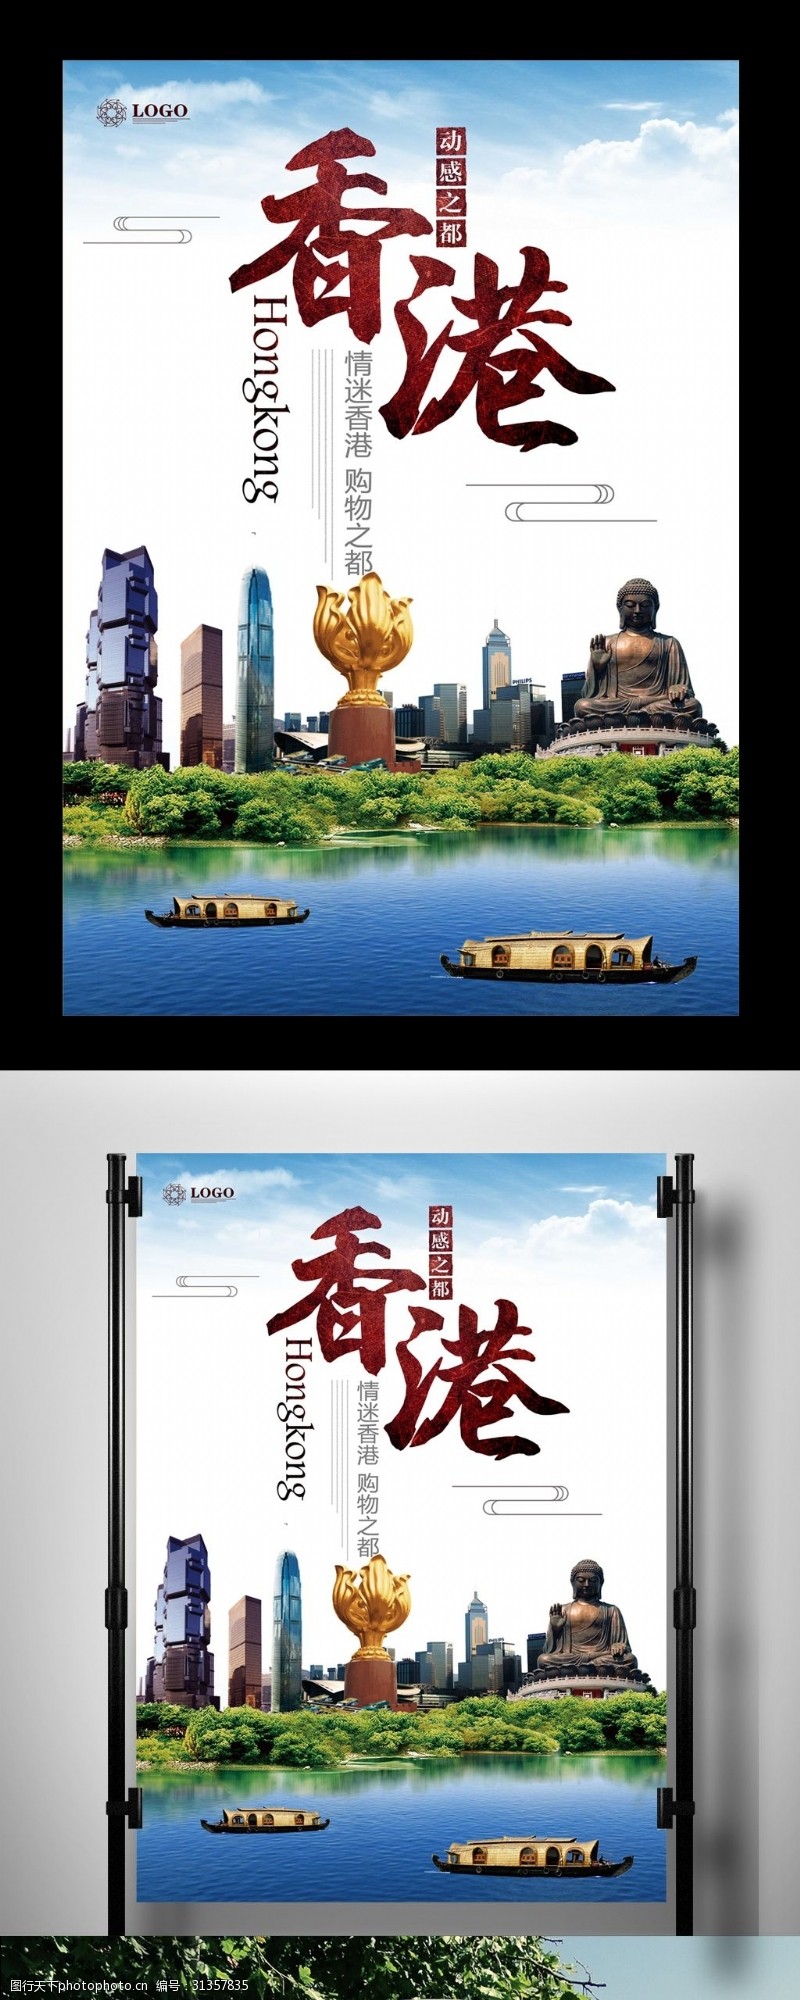 自助购物香港旅游休闲娱乐海报